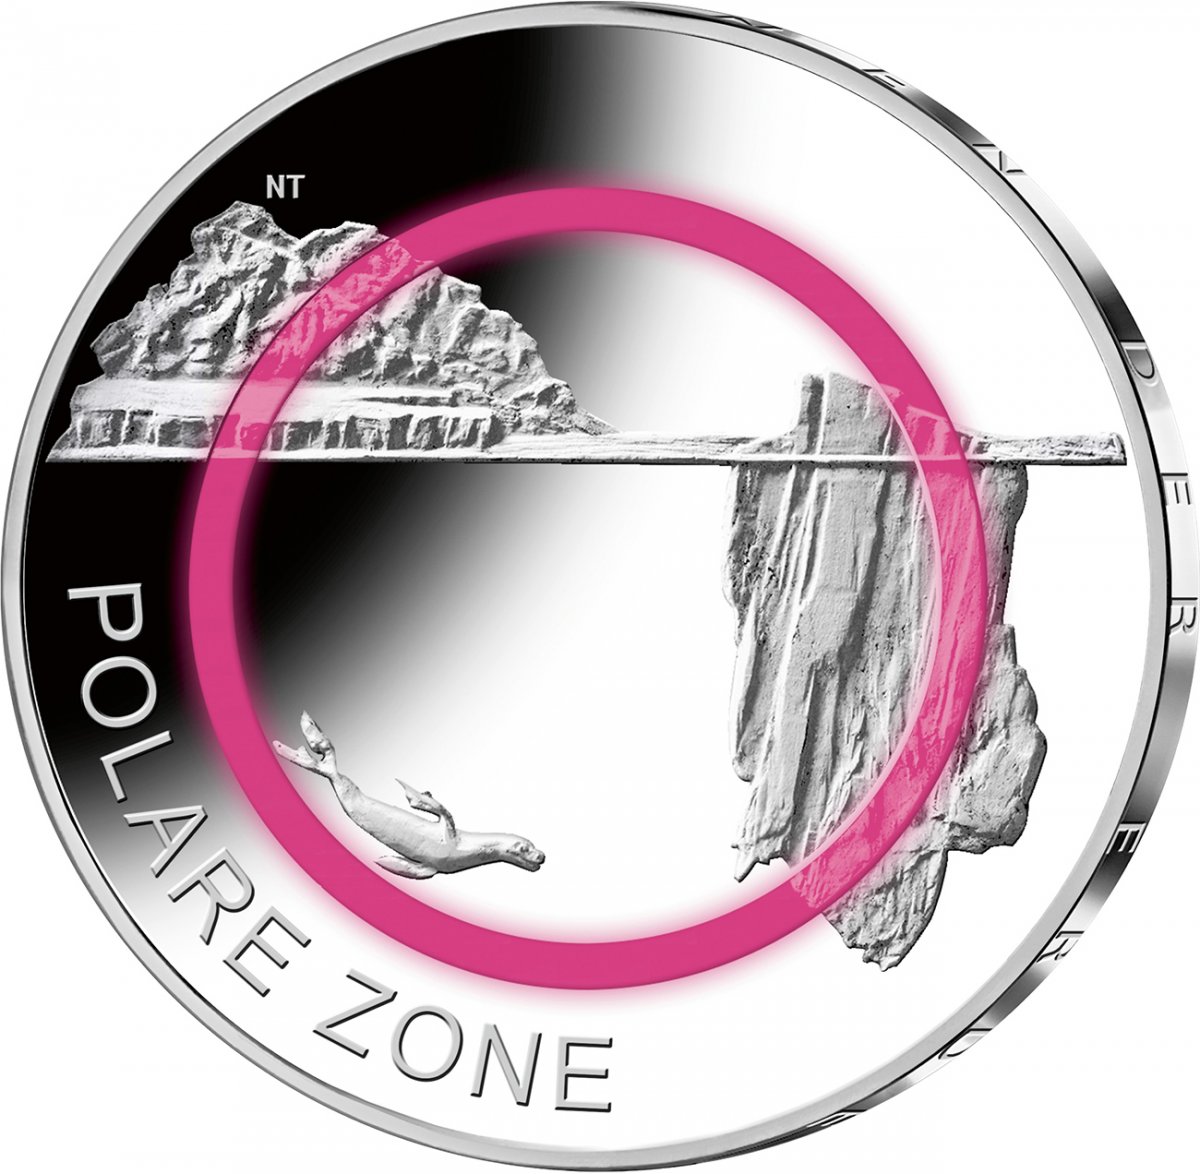 5 euro polymer ring collector coin 2021 "Polare Zone" 